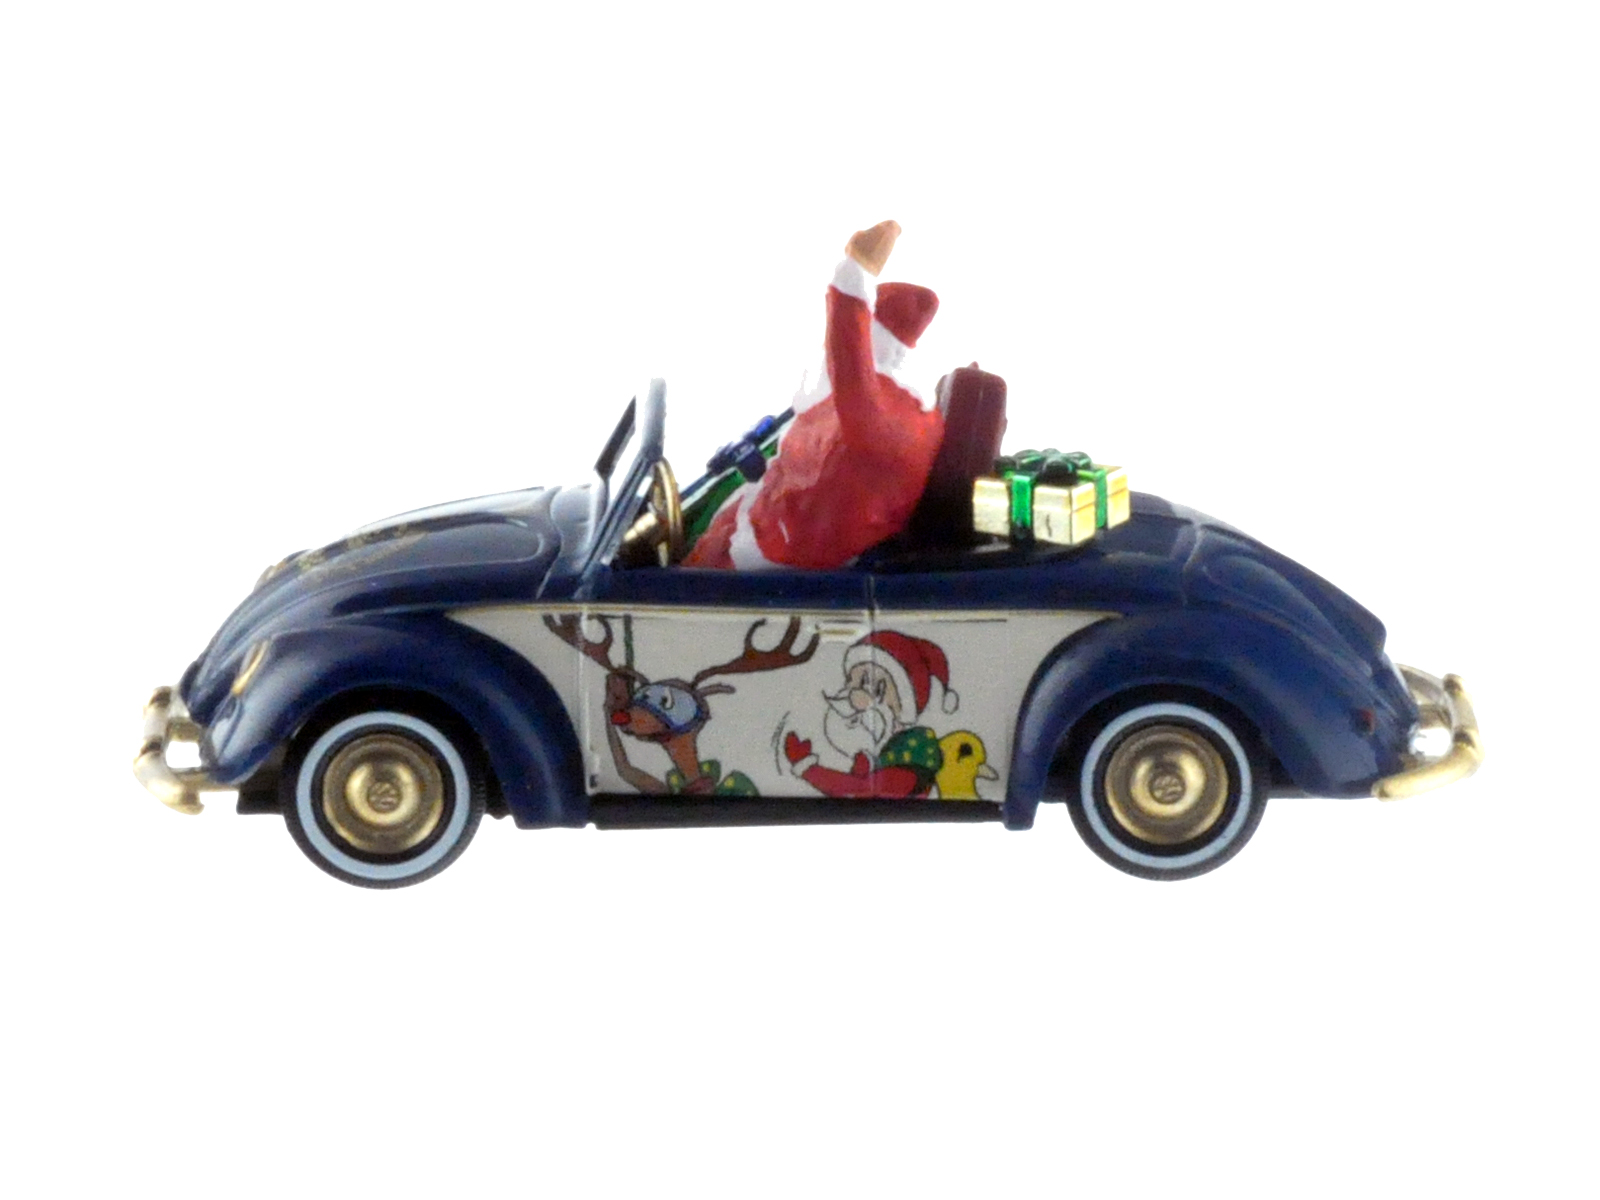 VW Käfer Weihnachten VW Hebmüller Cabrio Weihnachtsmodell mit Nikolaus und Weihnachtspäckchen limitiert 250 Stück